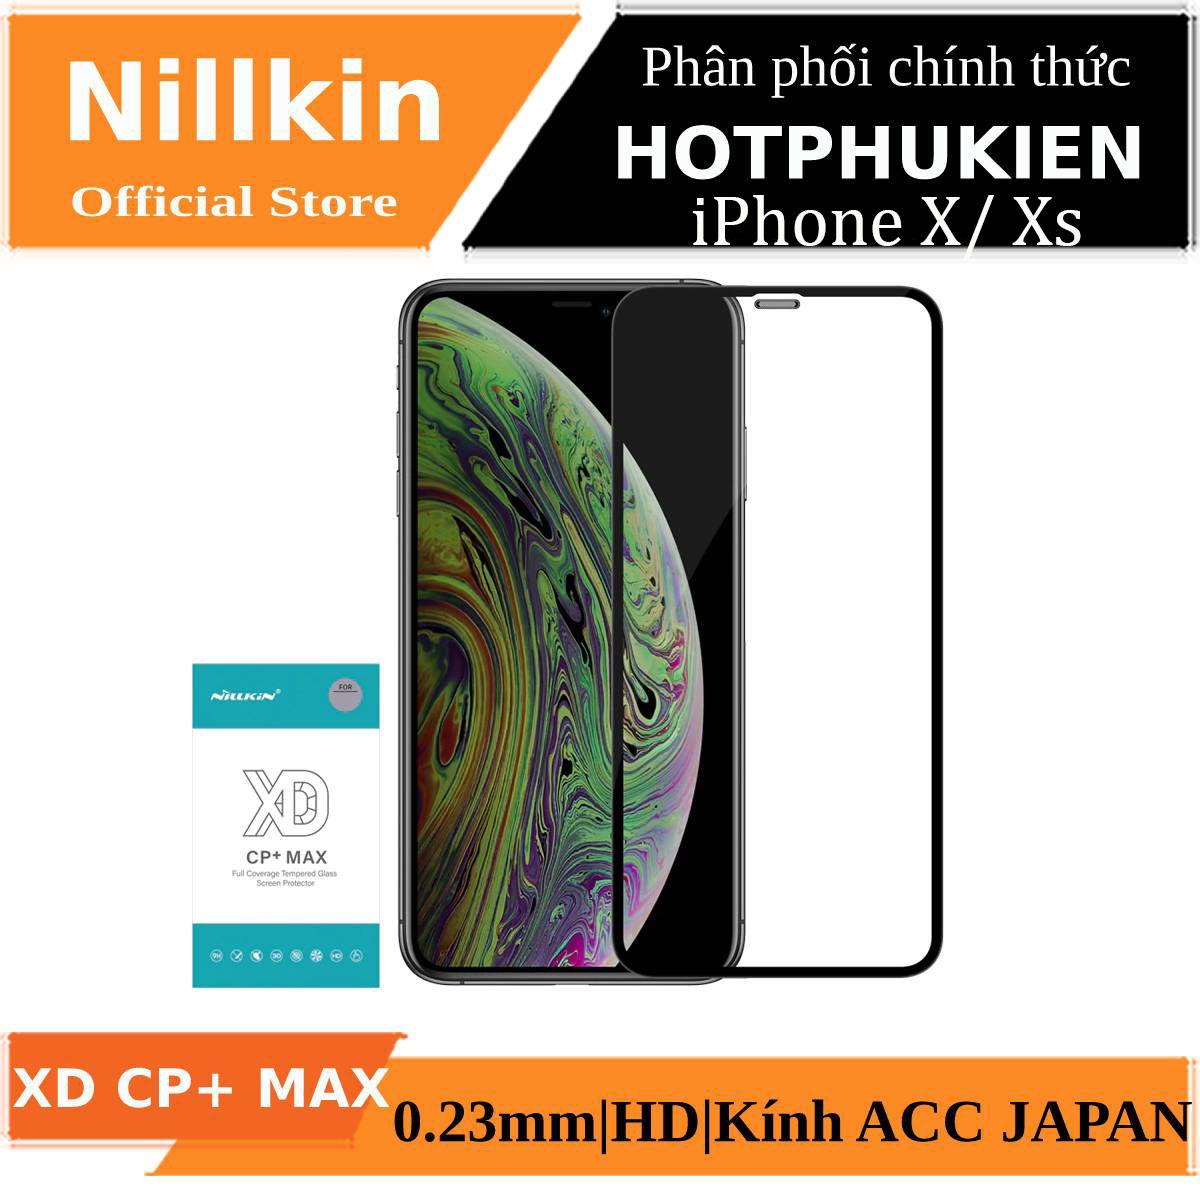 Miếng dán kính cường lực full 3D cho iPhone X / iPhone Xs hiệu Nillkin XD CP+ Max